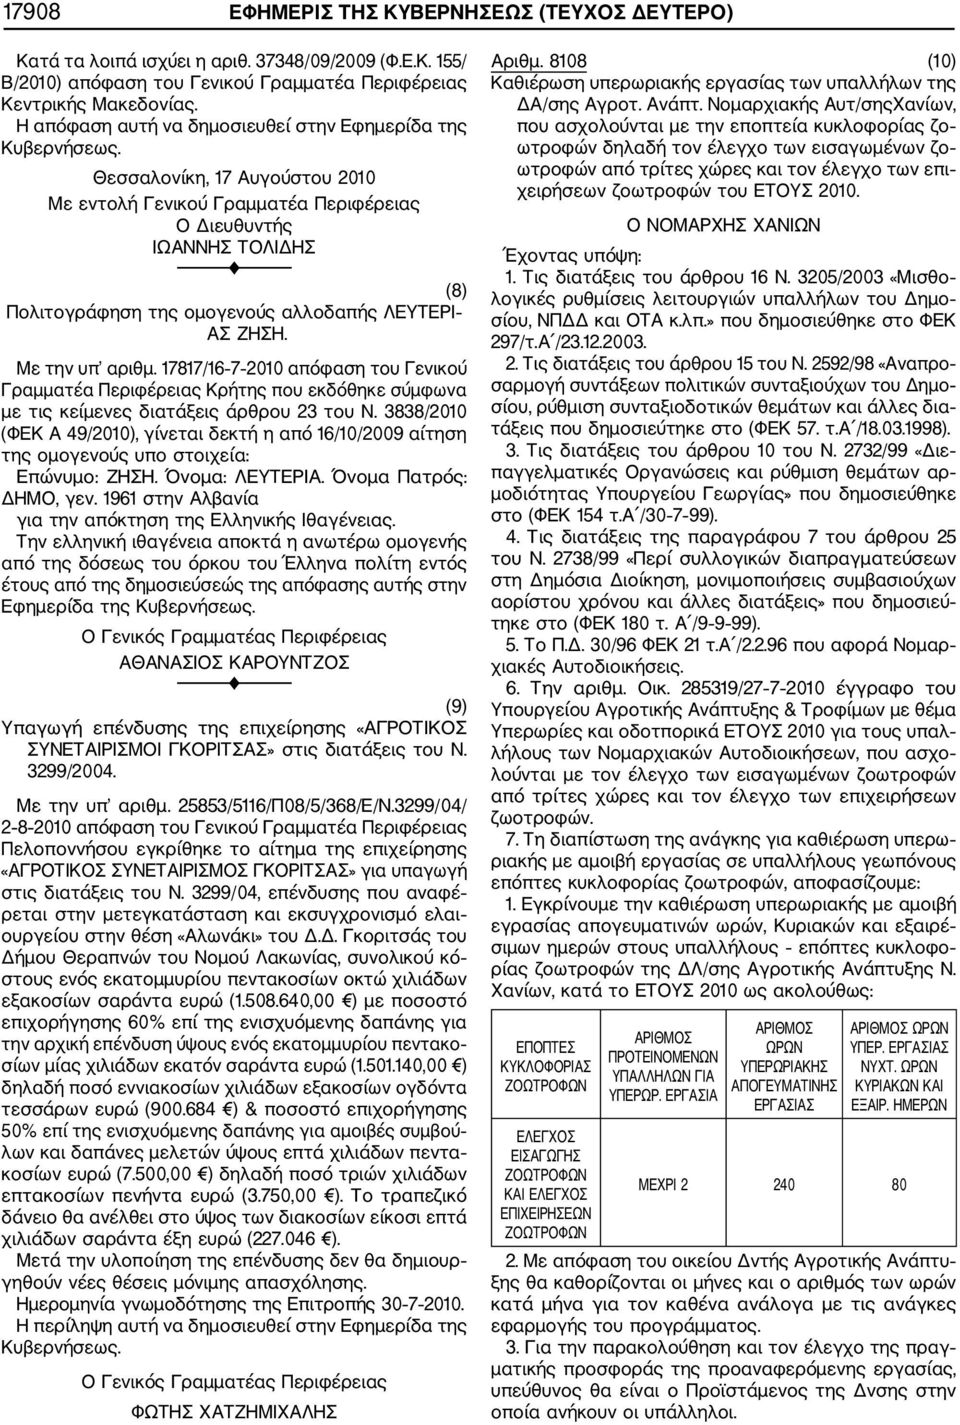 17817/16 7 2010 απόφαση του Γενικού Γραμματέα Περιφέρειας Κρήτης που εκδόθηκε σύμφωνα με τις κείμενες διατάξεις άρθρου 23 του Ν.